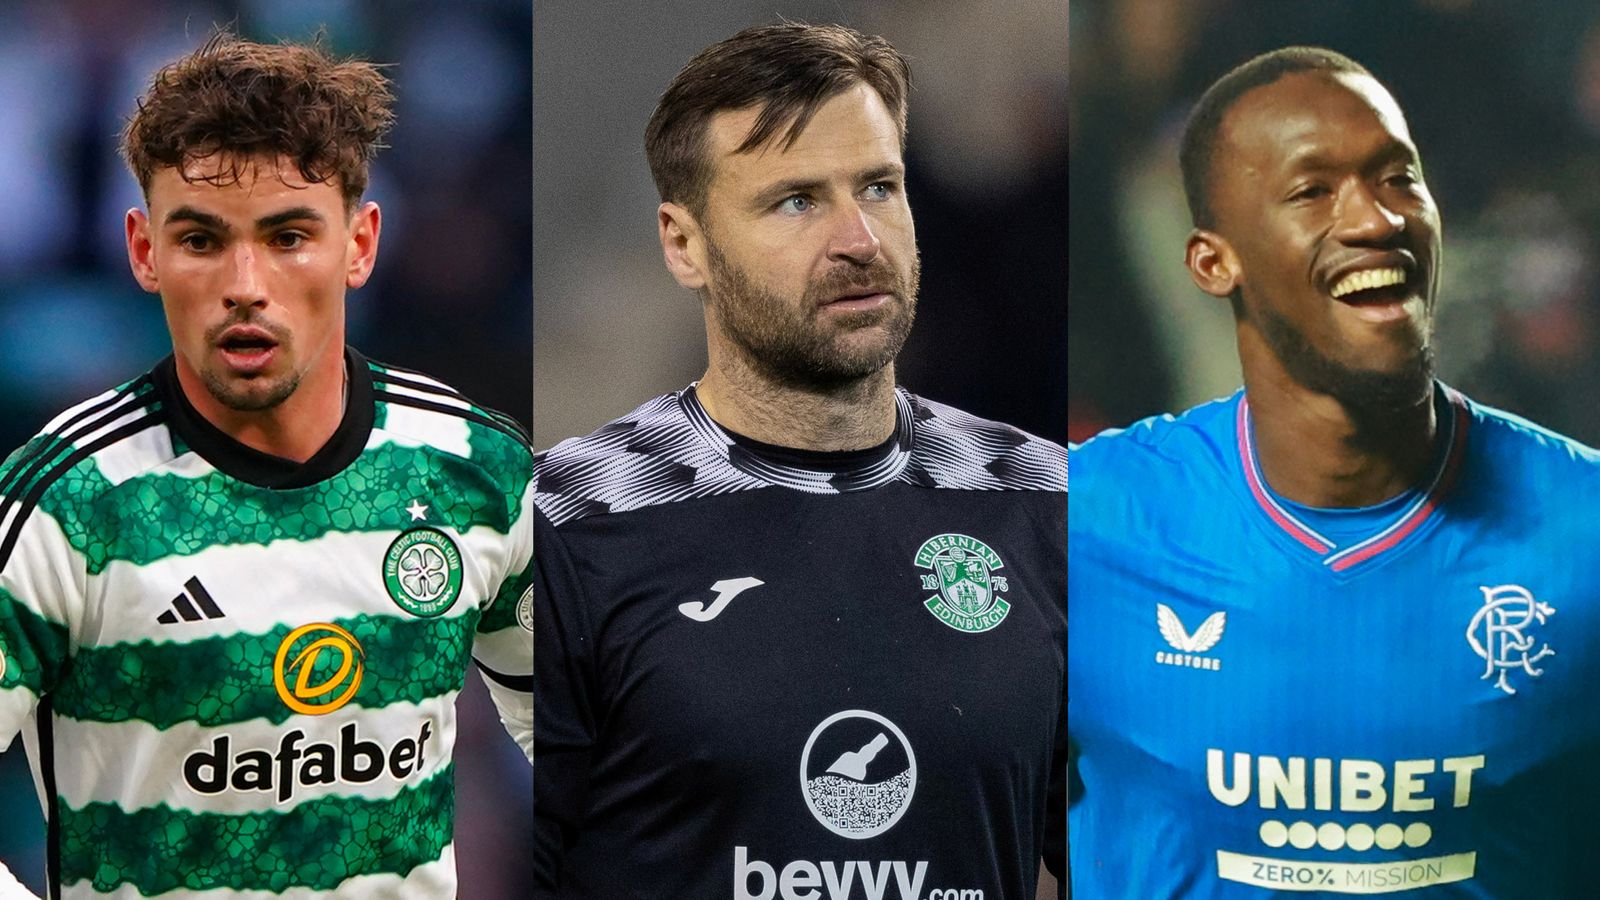 ทีมพรีเมียร์ลีกสกอตแลนด์ประจำสัปดาห์: ผู้เล่น Rangers, Celtic, Hibs และ Motherwell |  ข่าวฟุตบอล